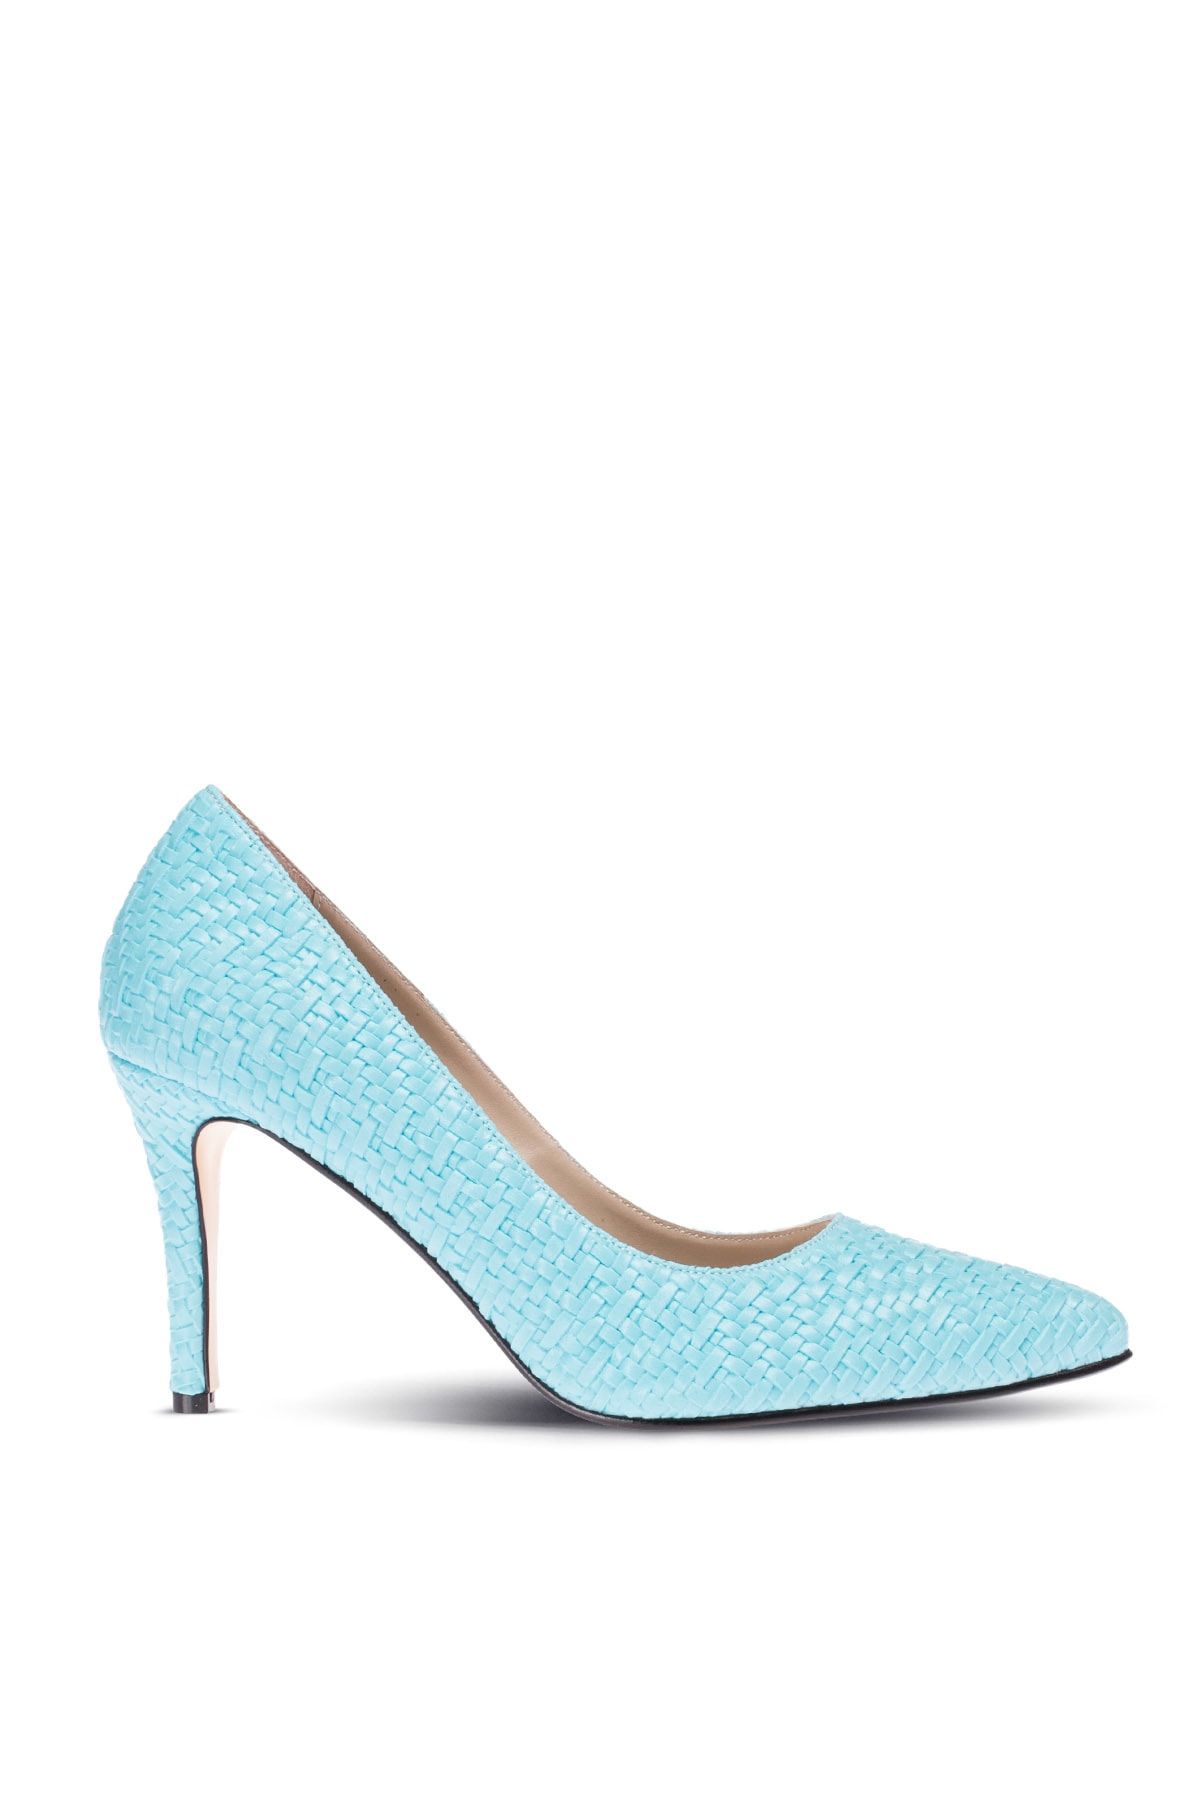 Deery Mavi Kadın  Klasik Topuklu Ayakkabı 02029ZMVIM04